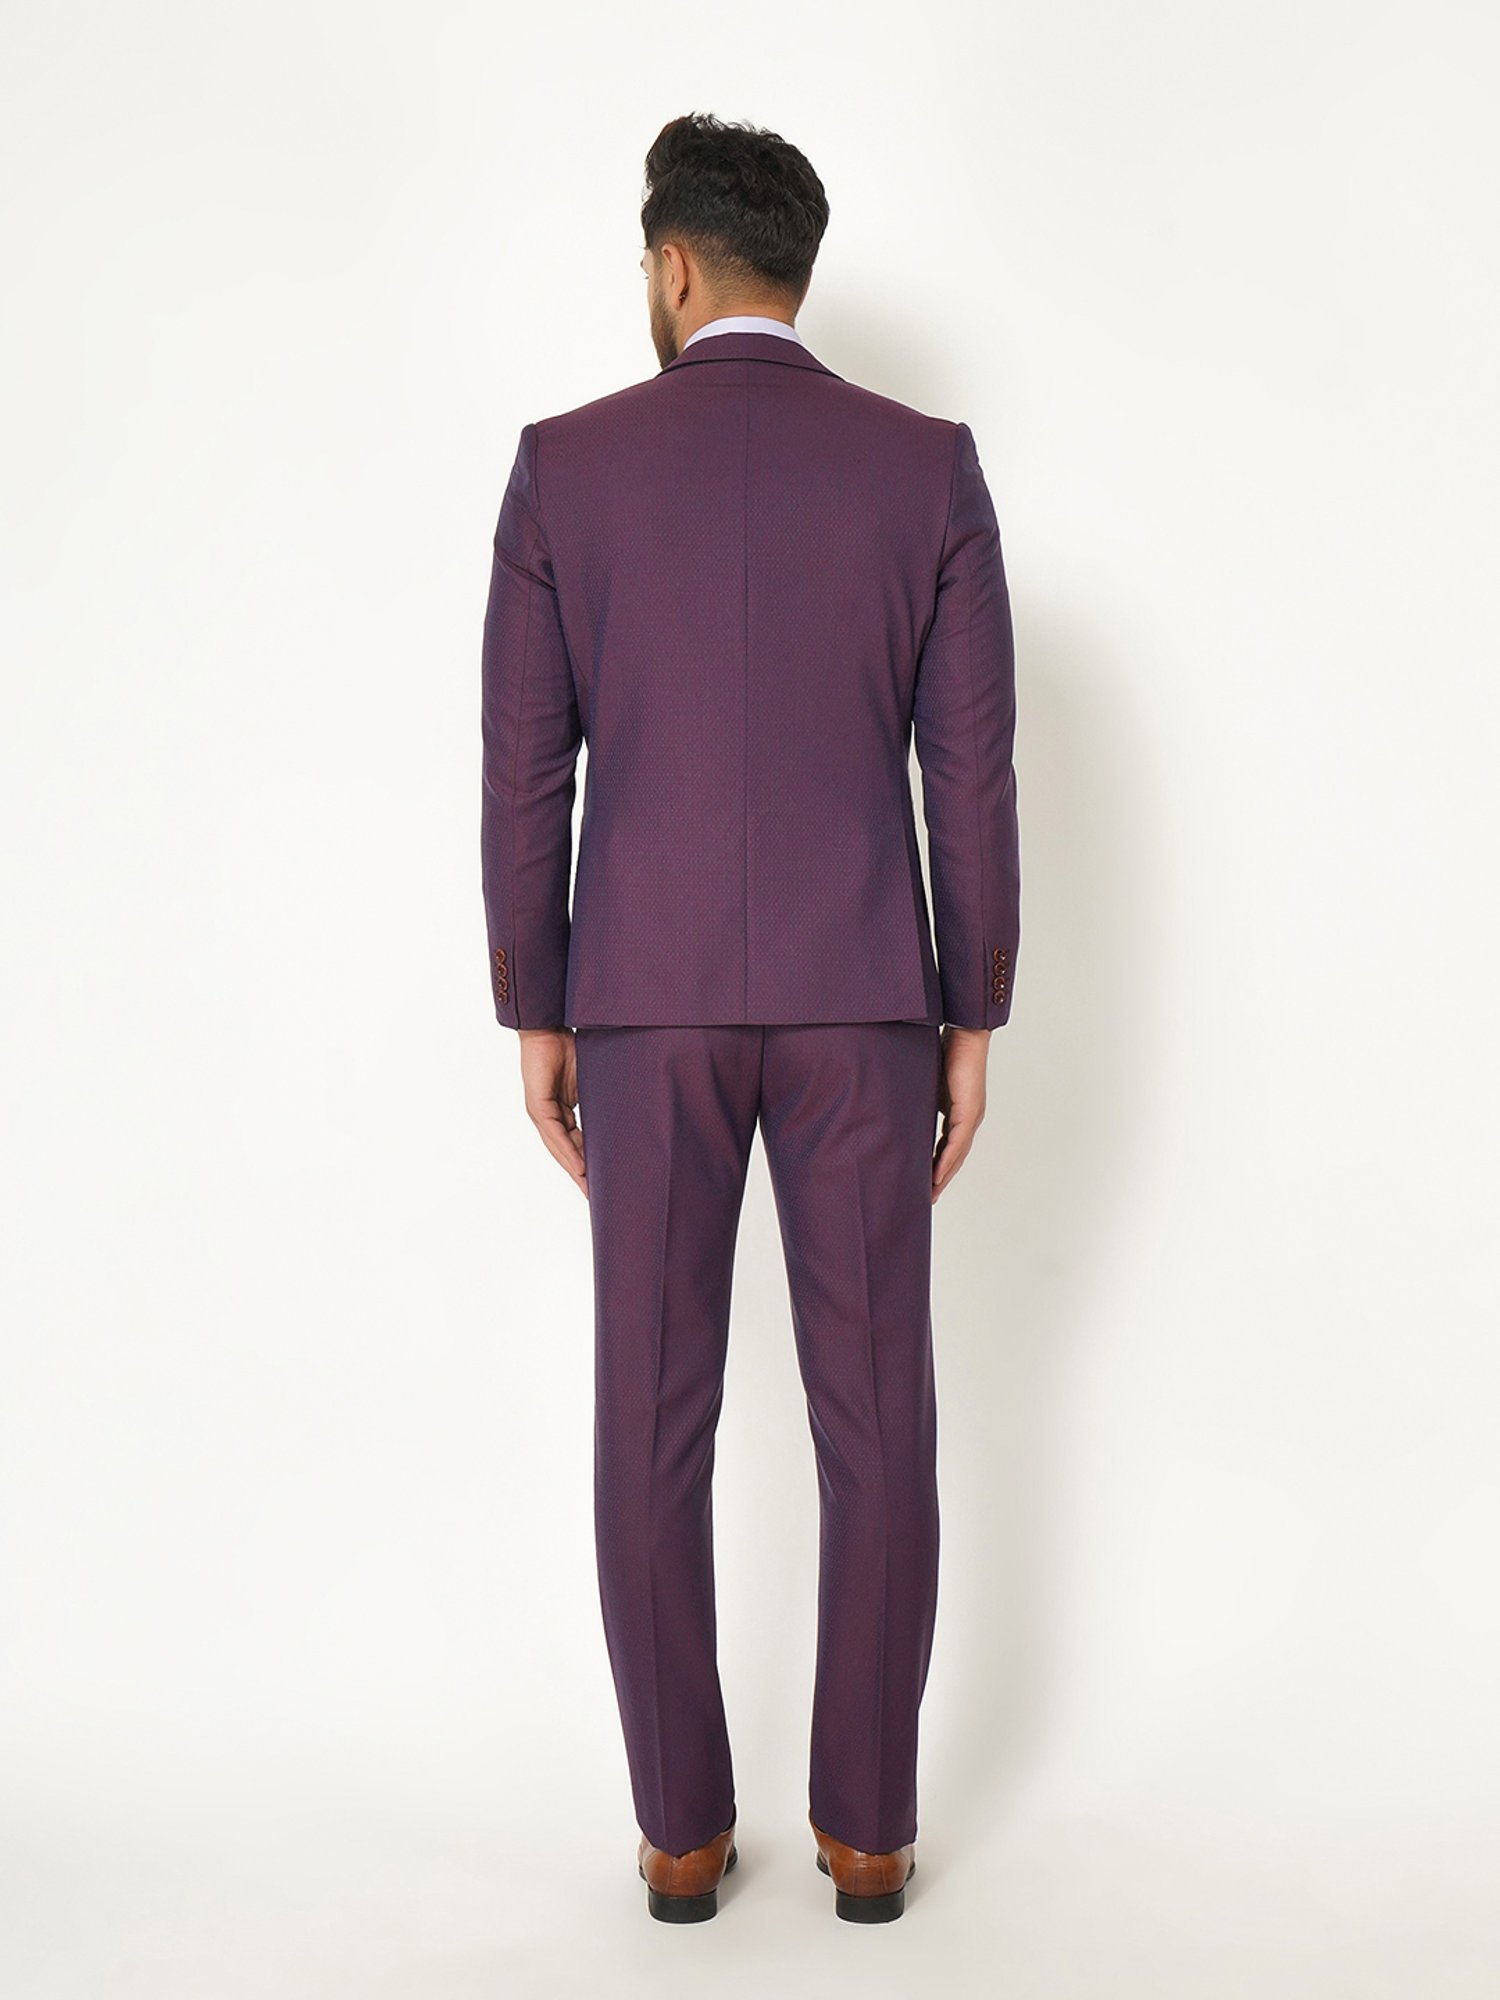 1PA1 Men's Linen Blend Suit Jacket Two Button Business Wedding Slim Fit  Blazer,Light Purple,2XL - Walmart.com